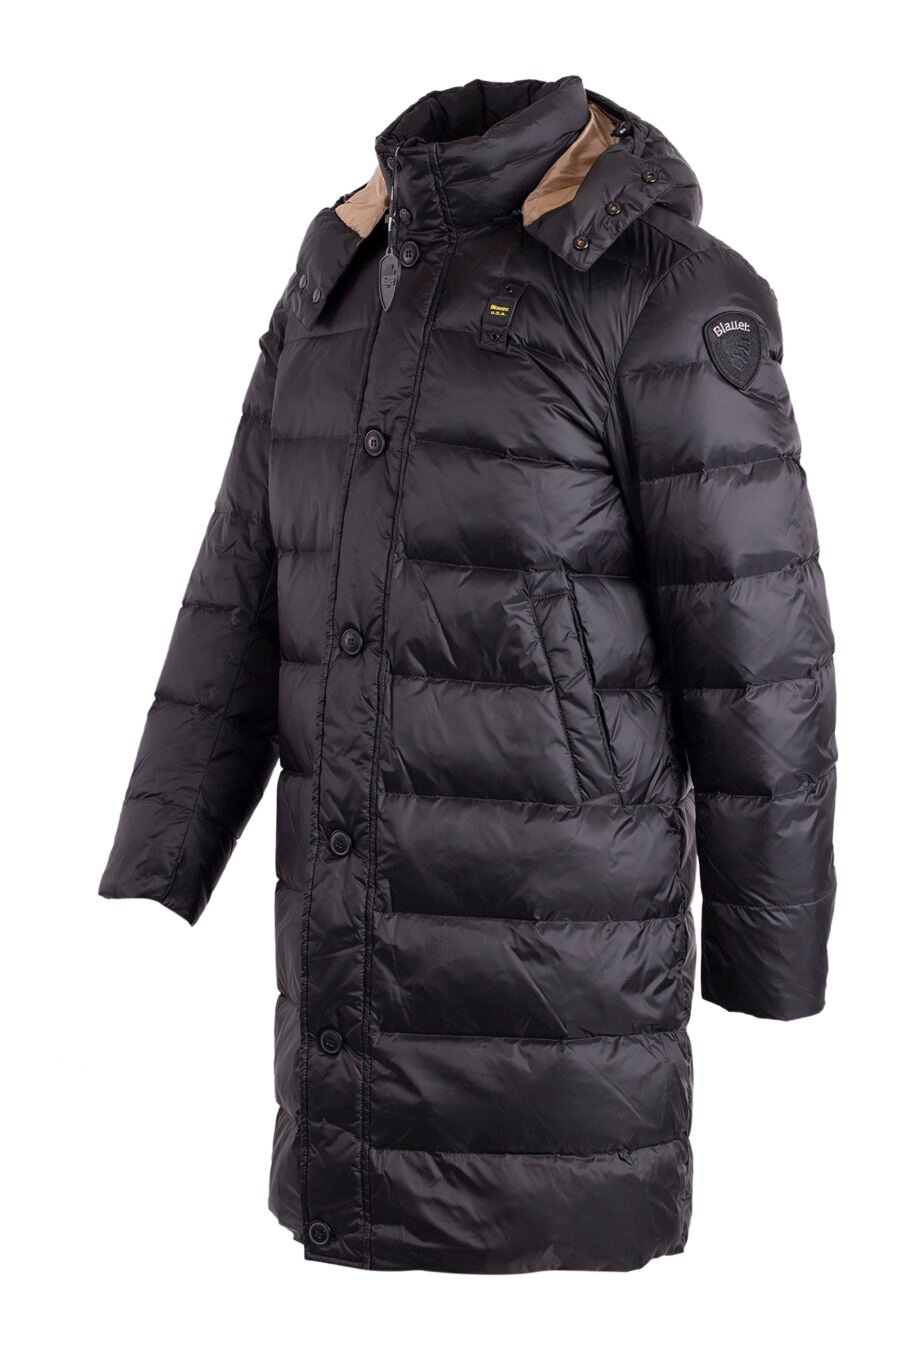 Long black waterproof hooded jacket with brown lining - IMG 4570